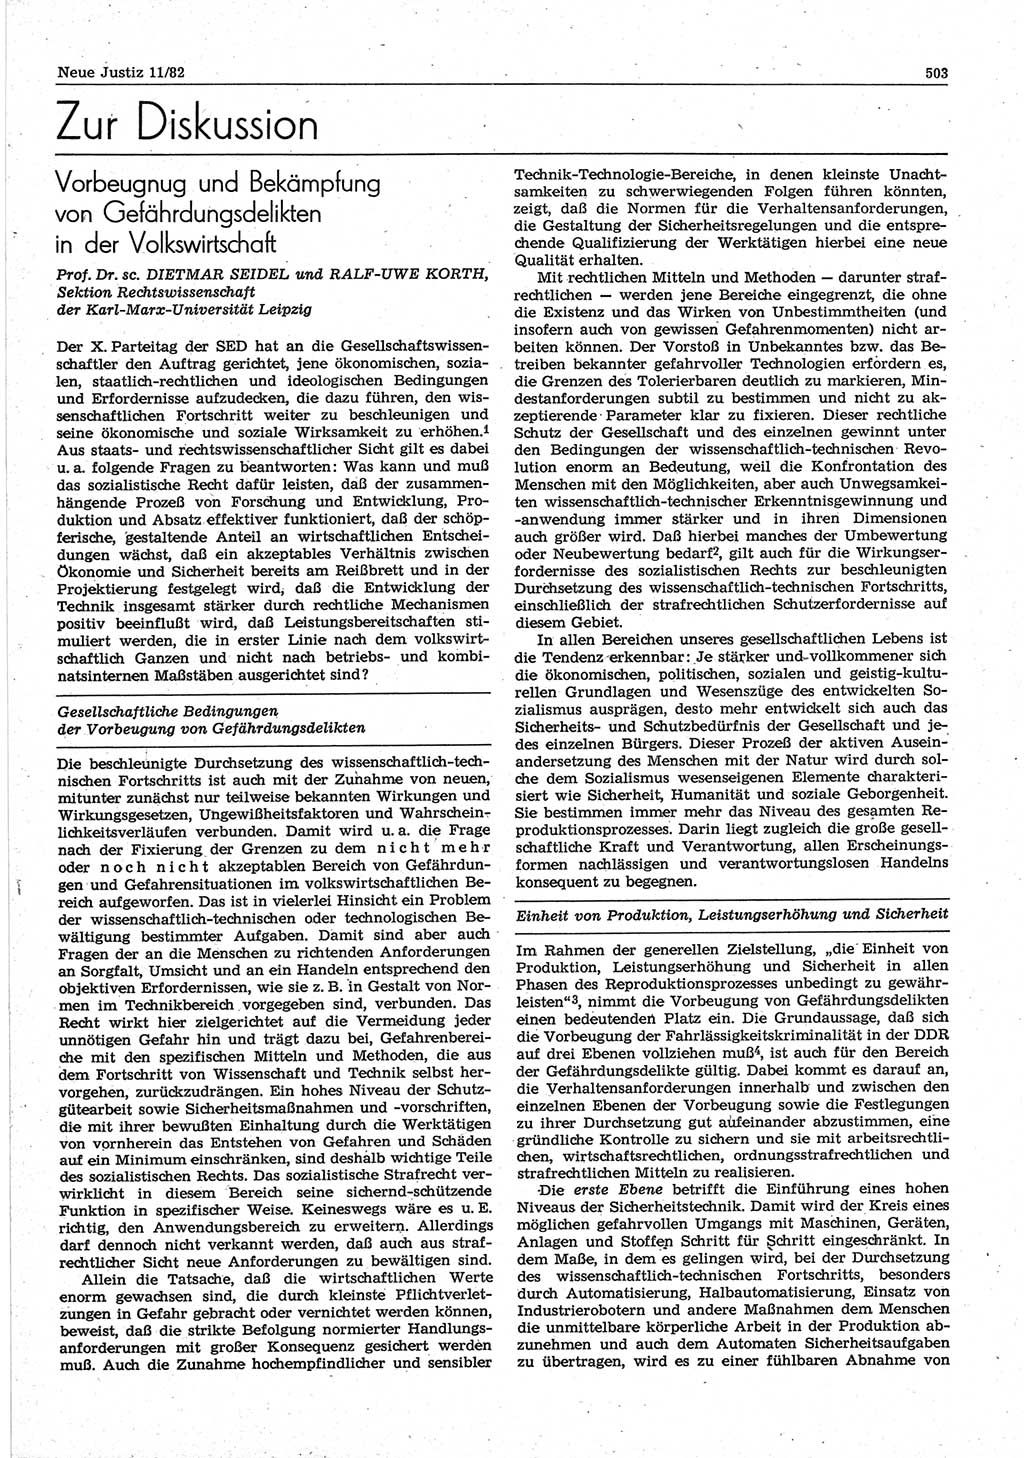 Neue Justiz (NJ), Zeitschrift für sozialistisches Recht und Gesetzlichkeit [Deutsche Demokratische Republik (DDR)], 36. Jahrgang 1982, Seite 503 (NJ DDR 1982, S. 503)